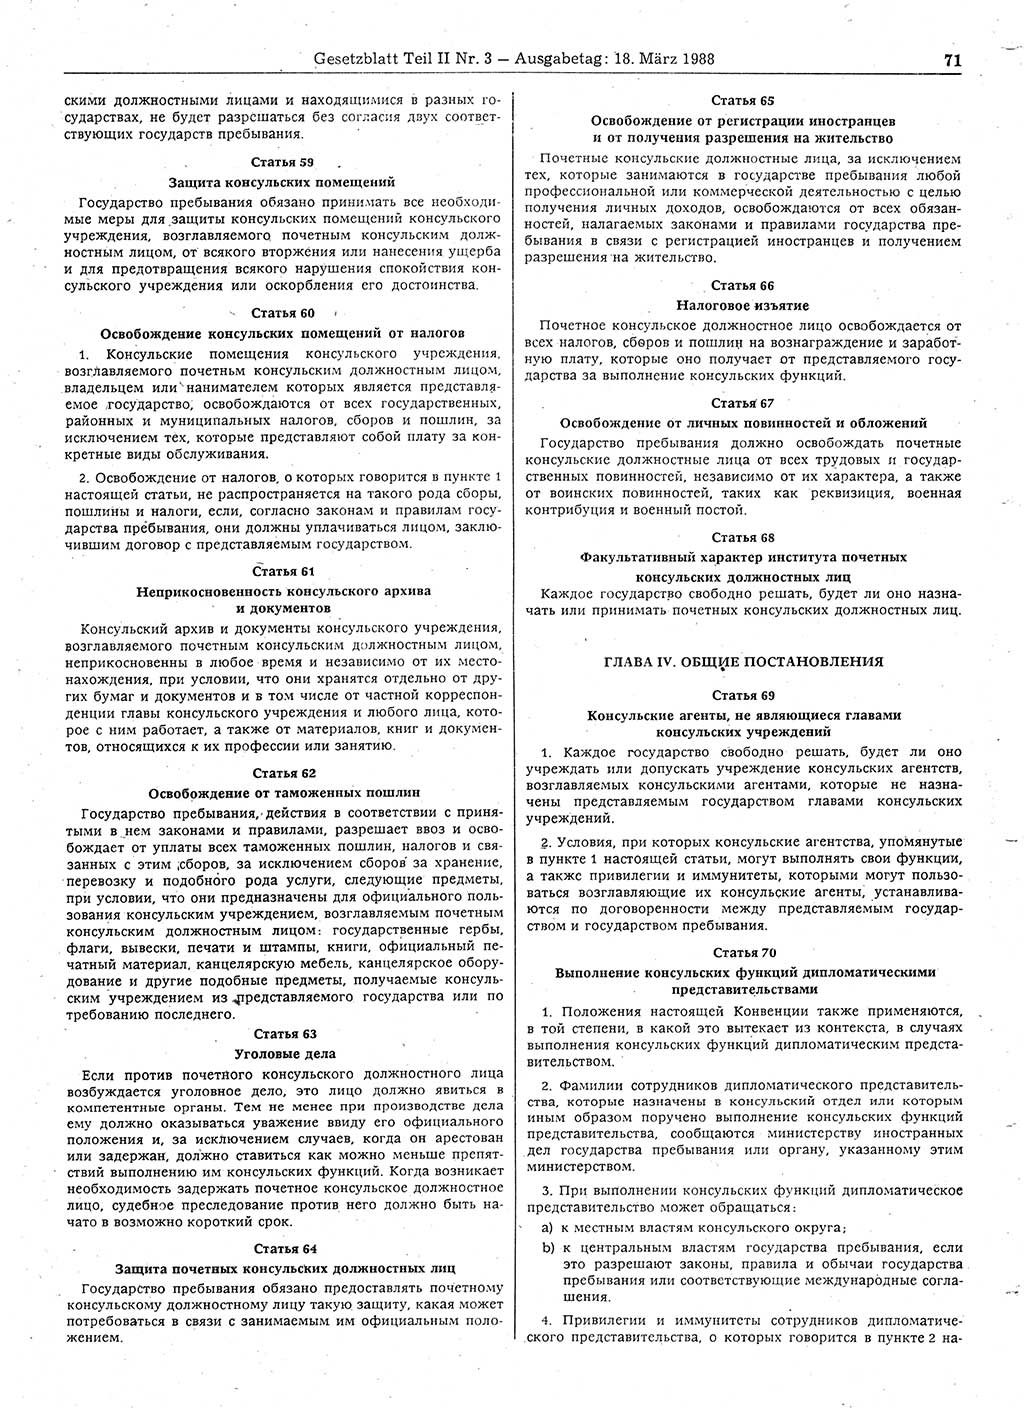 Gesetzblatt (GBl.) der Deutschen Demokratischen Republik (DDR) Teil ⅠⅠ 1988, Seite 71 (GBl. DDR ⅠⅠ 1988, S. 71)